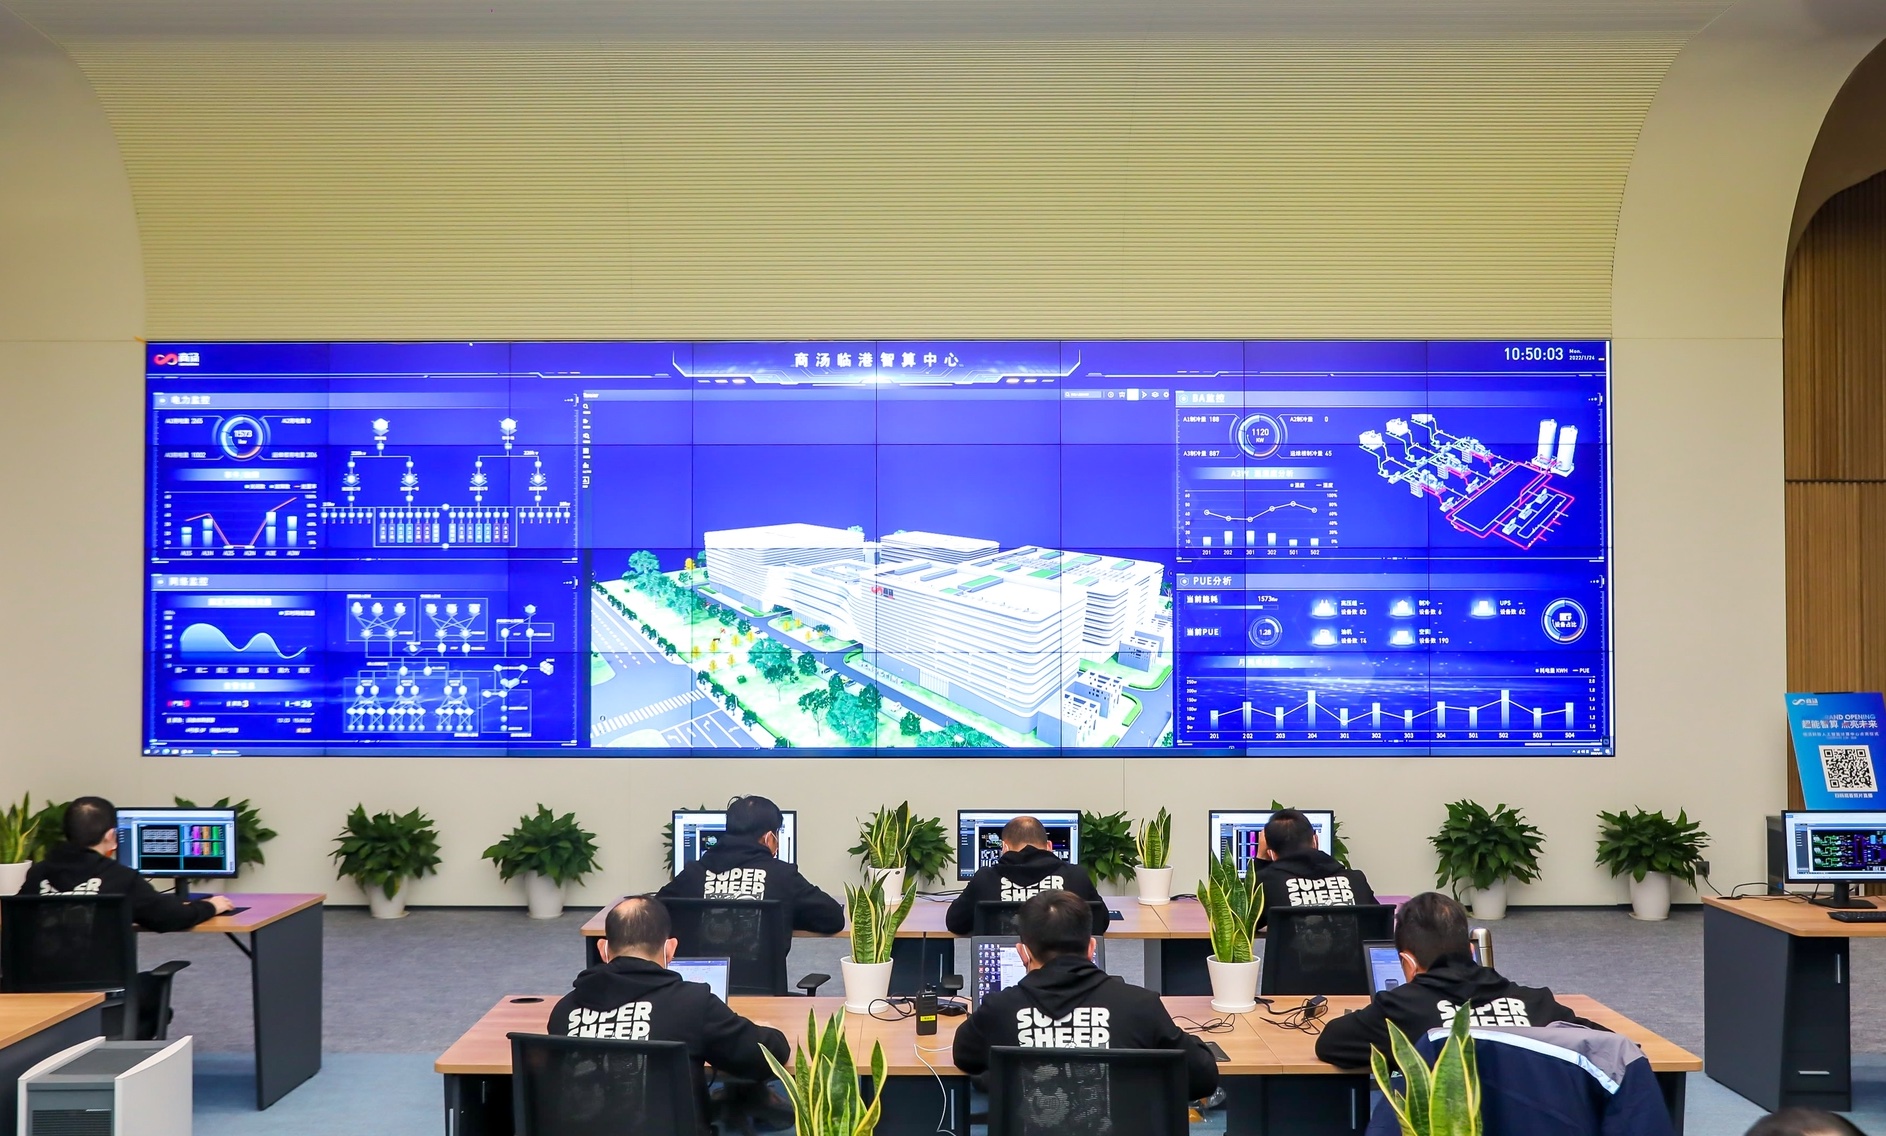 بزرگترین مرکز داده هوش مصنوعی آسیا در شانگهای افتتاح شد
